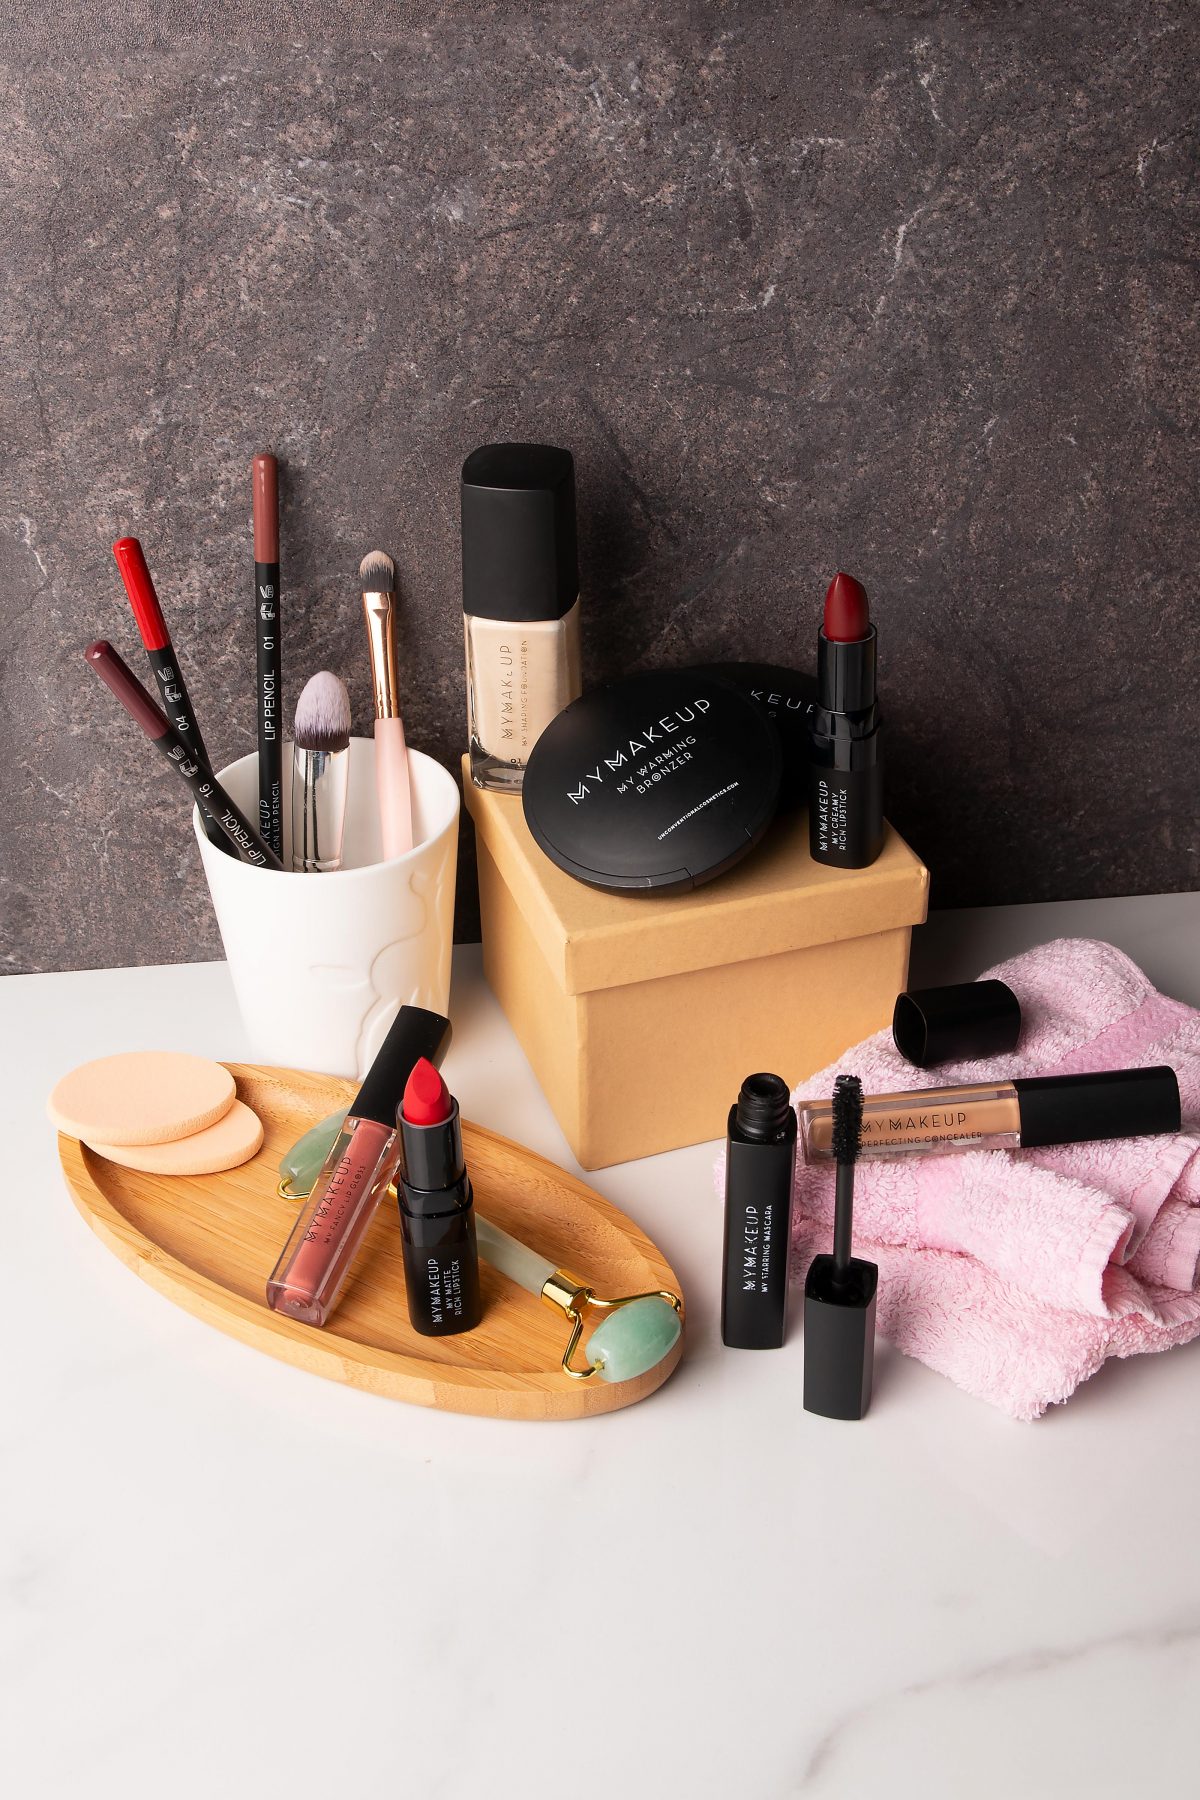 Immagine con diversi prodotti makeup